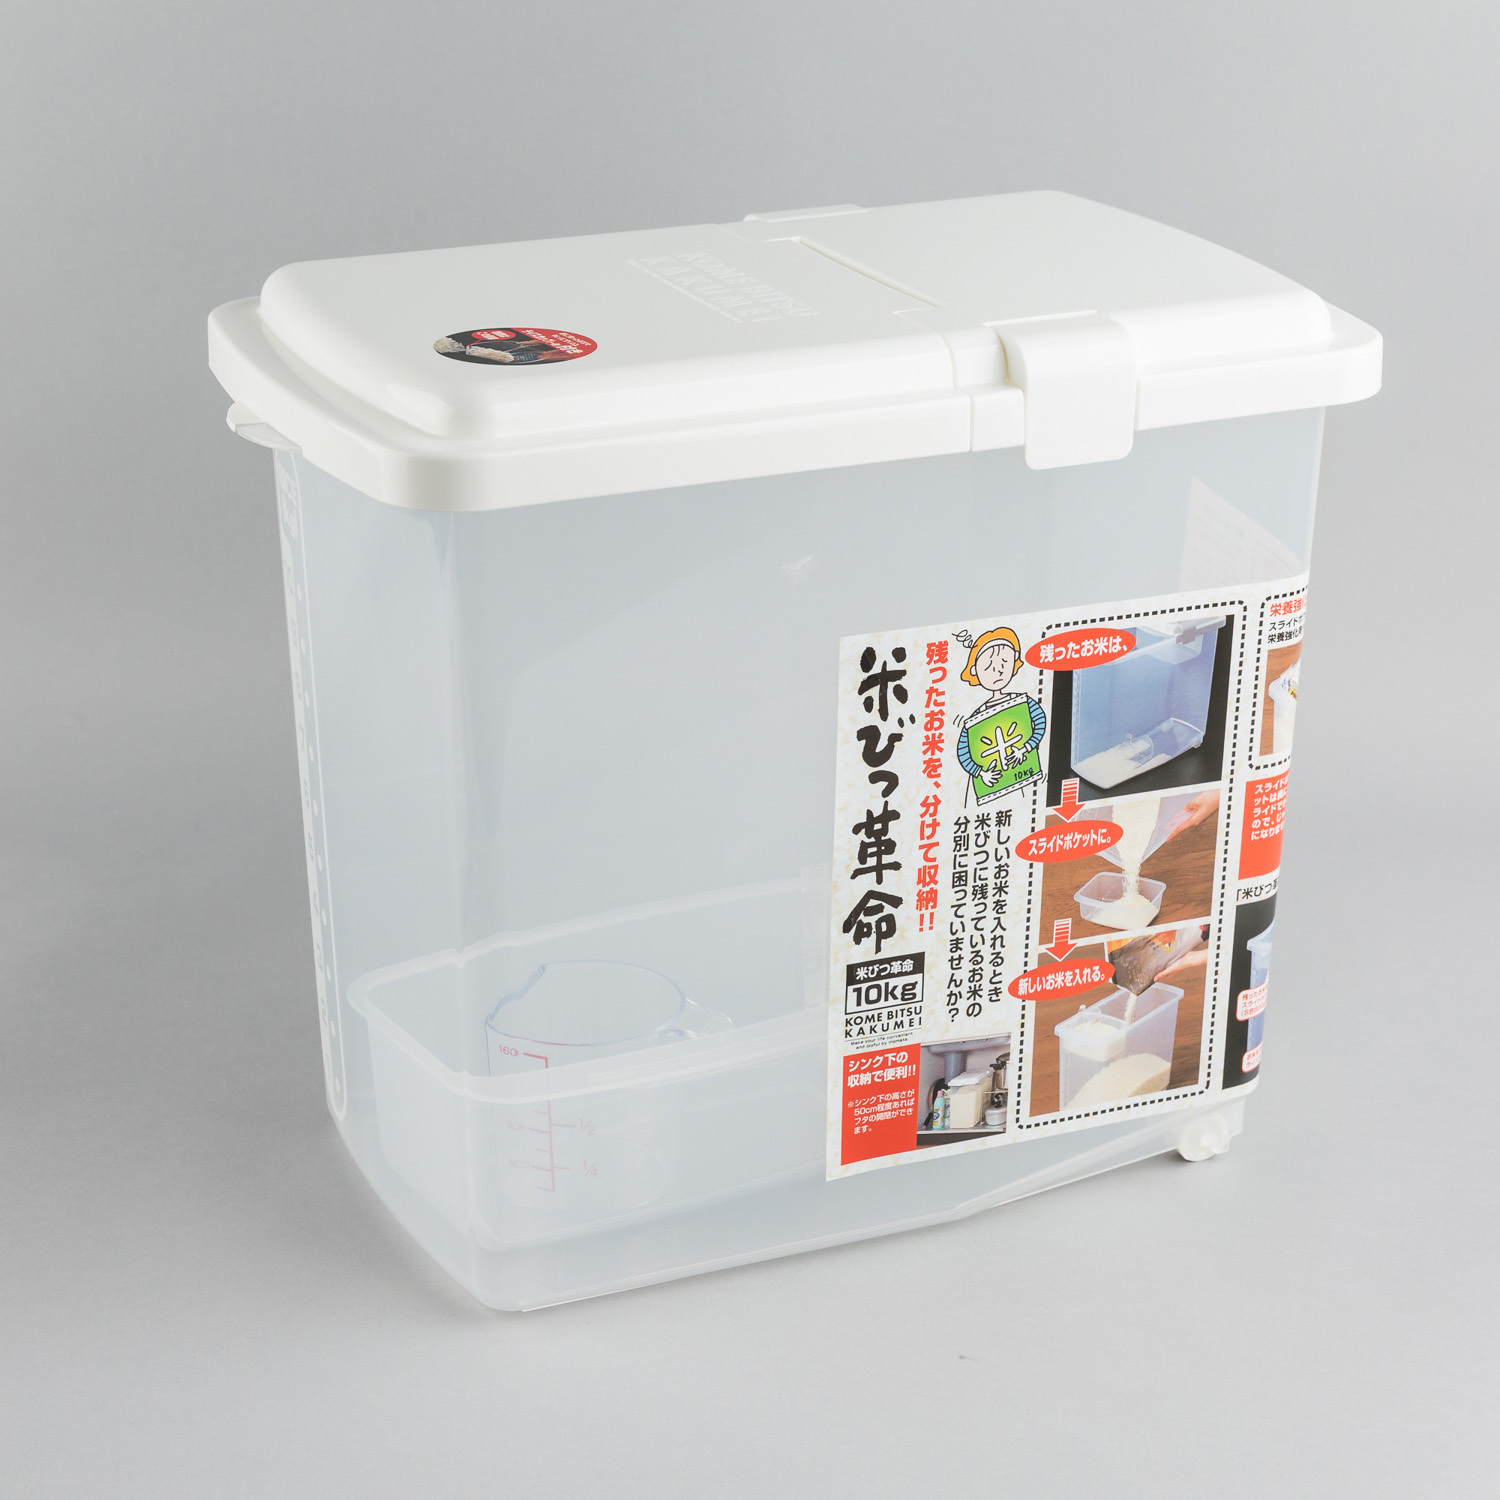 日本原产inomata10kg装储米箱米缸米桶带量杯滑轮残米盒 白色